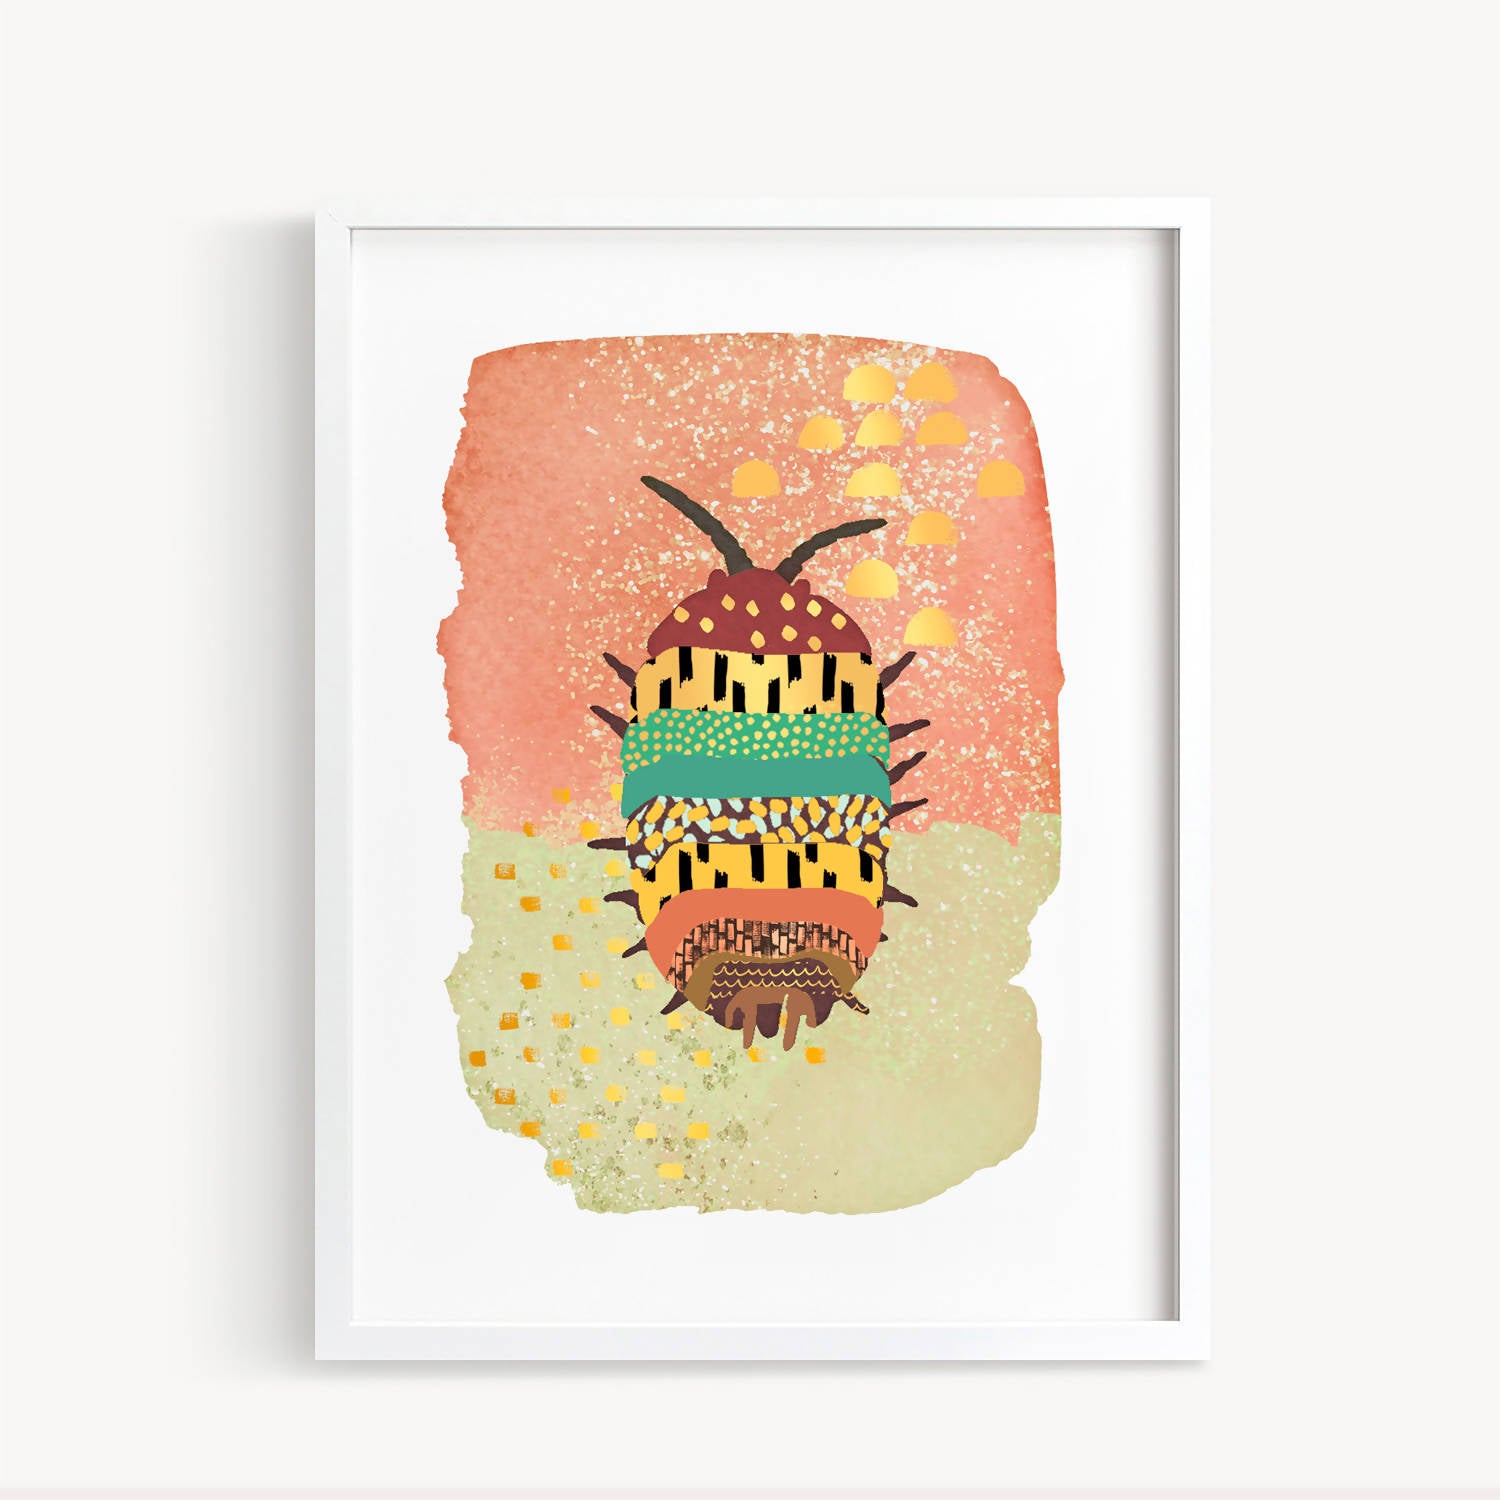 Dúo de cuadros "Insectos Gold" libélula y chanchito de tierra